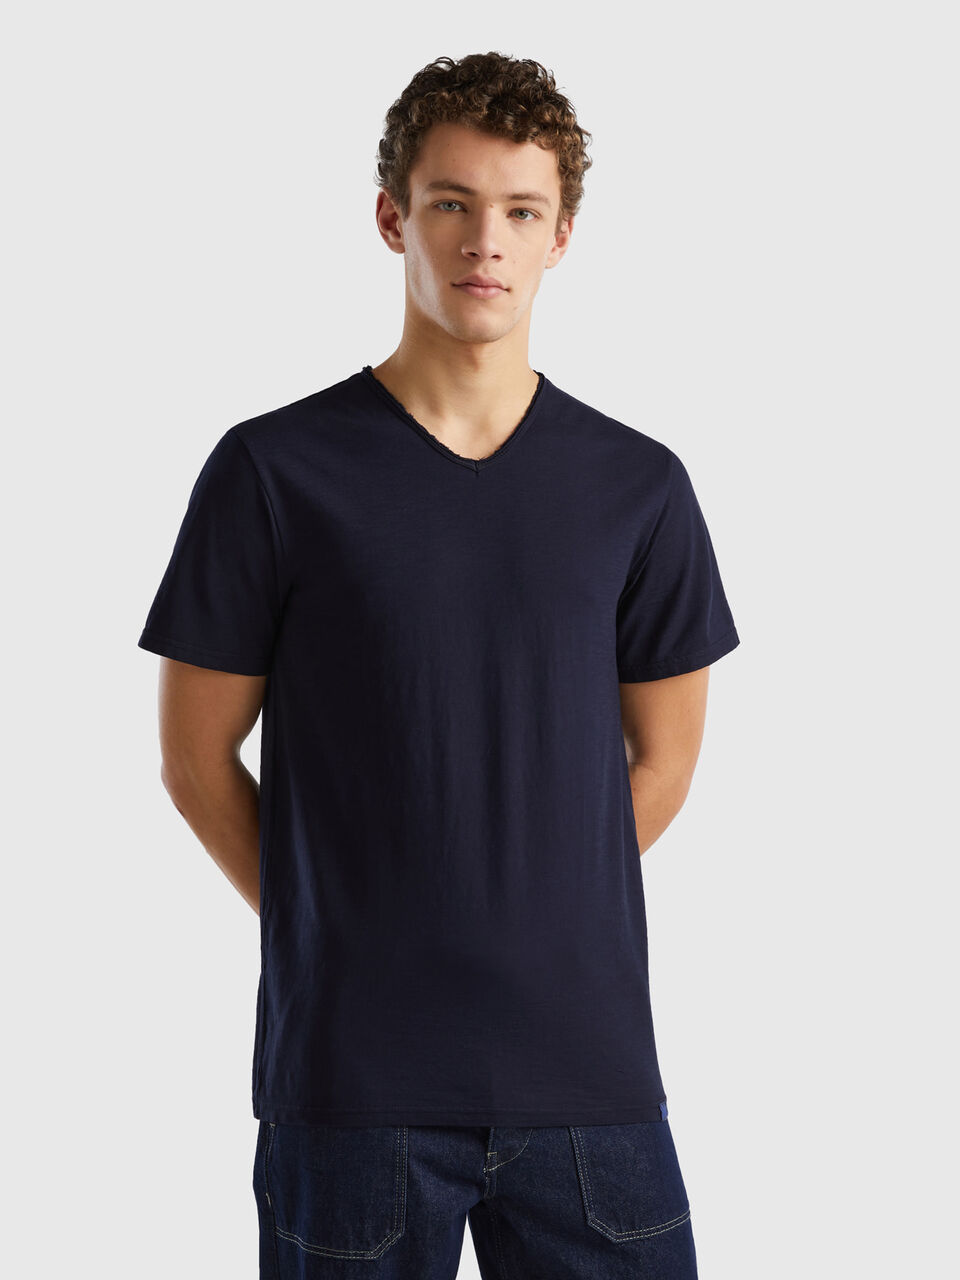 V-neck t-shirt in 100% cotton - Dark Blue | Benetton